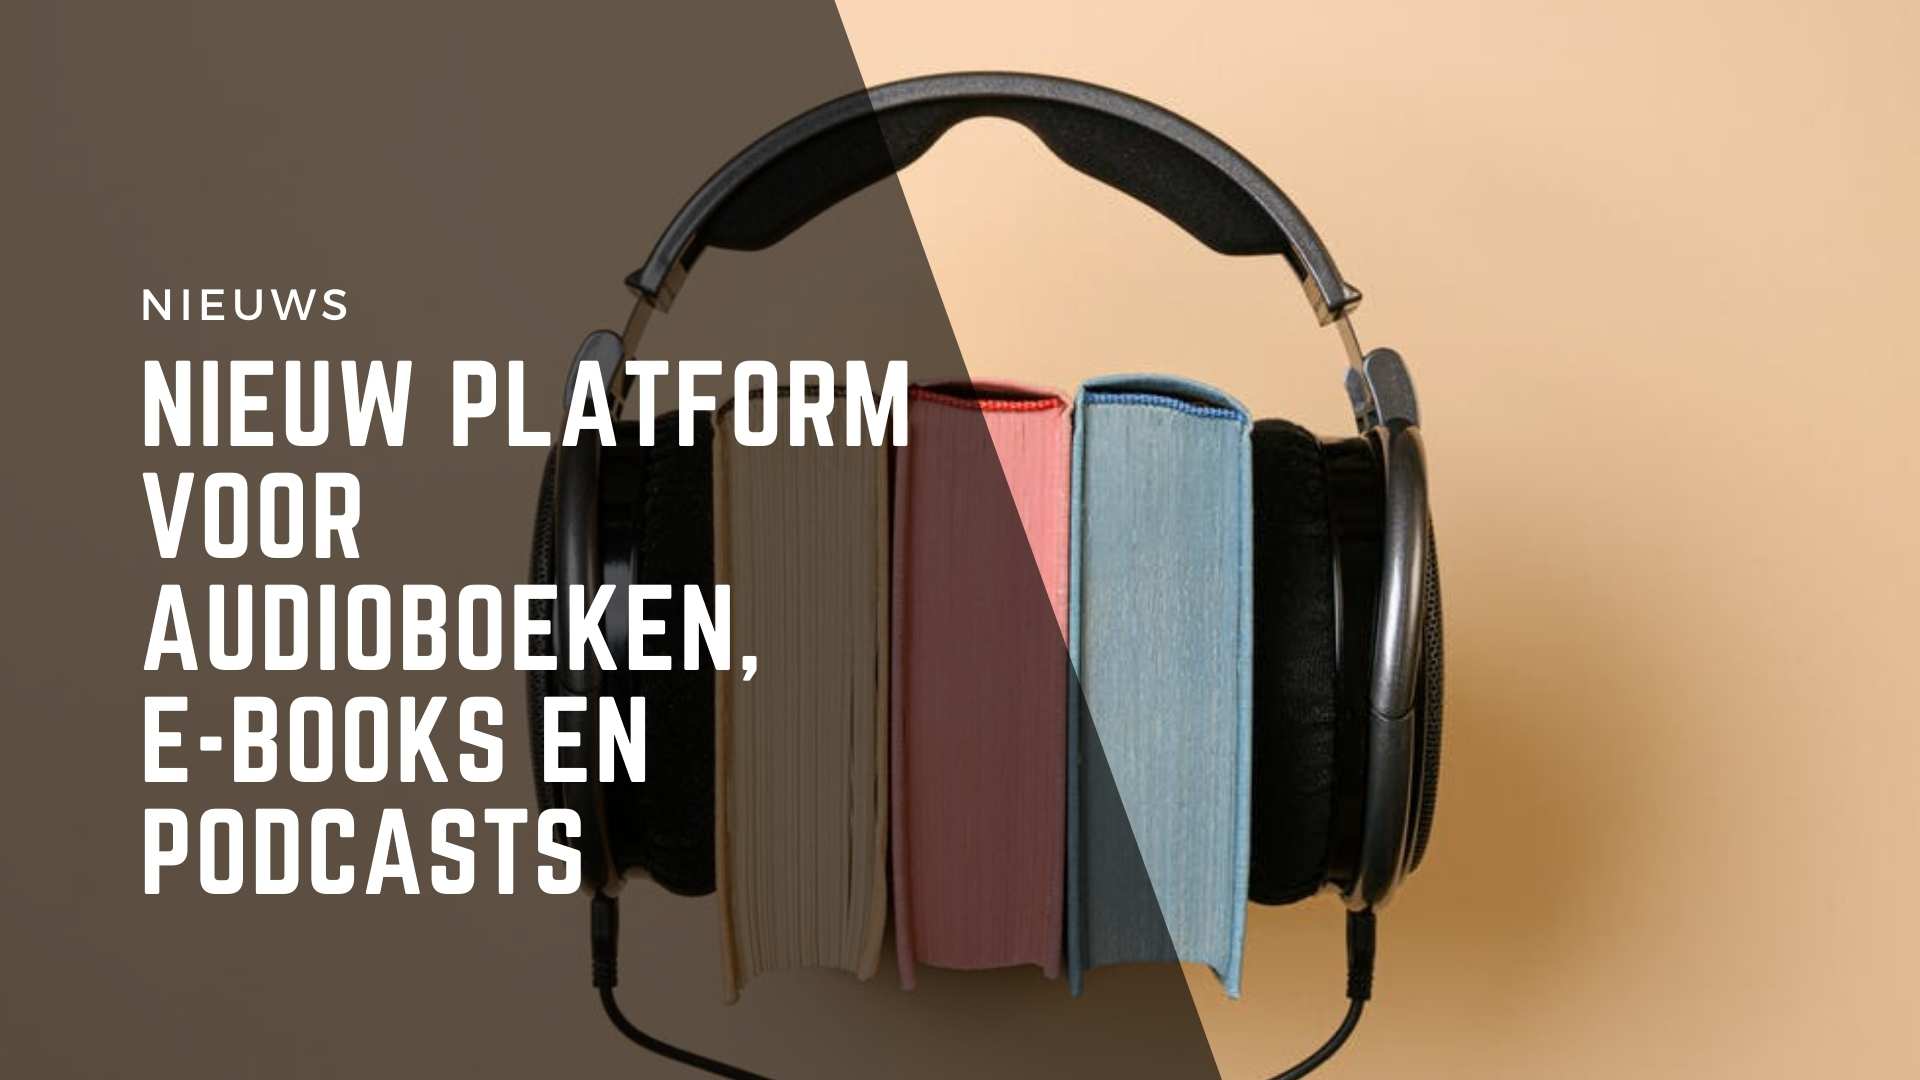 Nederlandse uitgevers komen met platform voor audioboeken e-books en podcasts